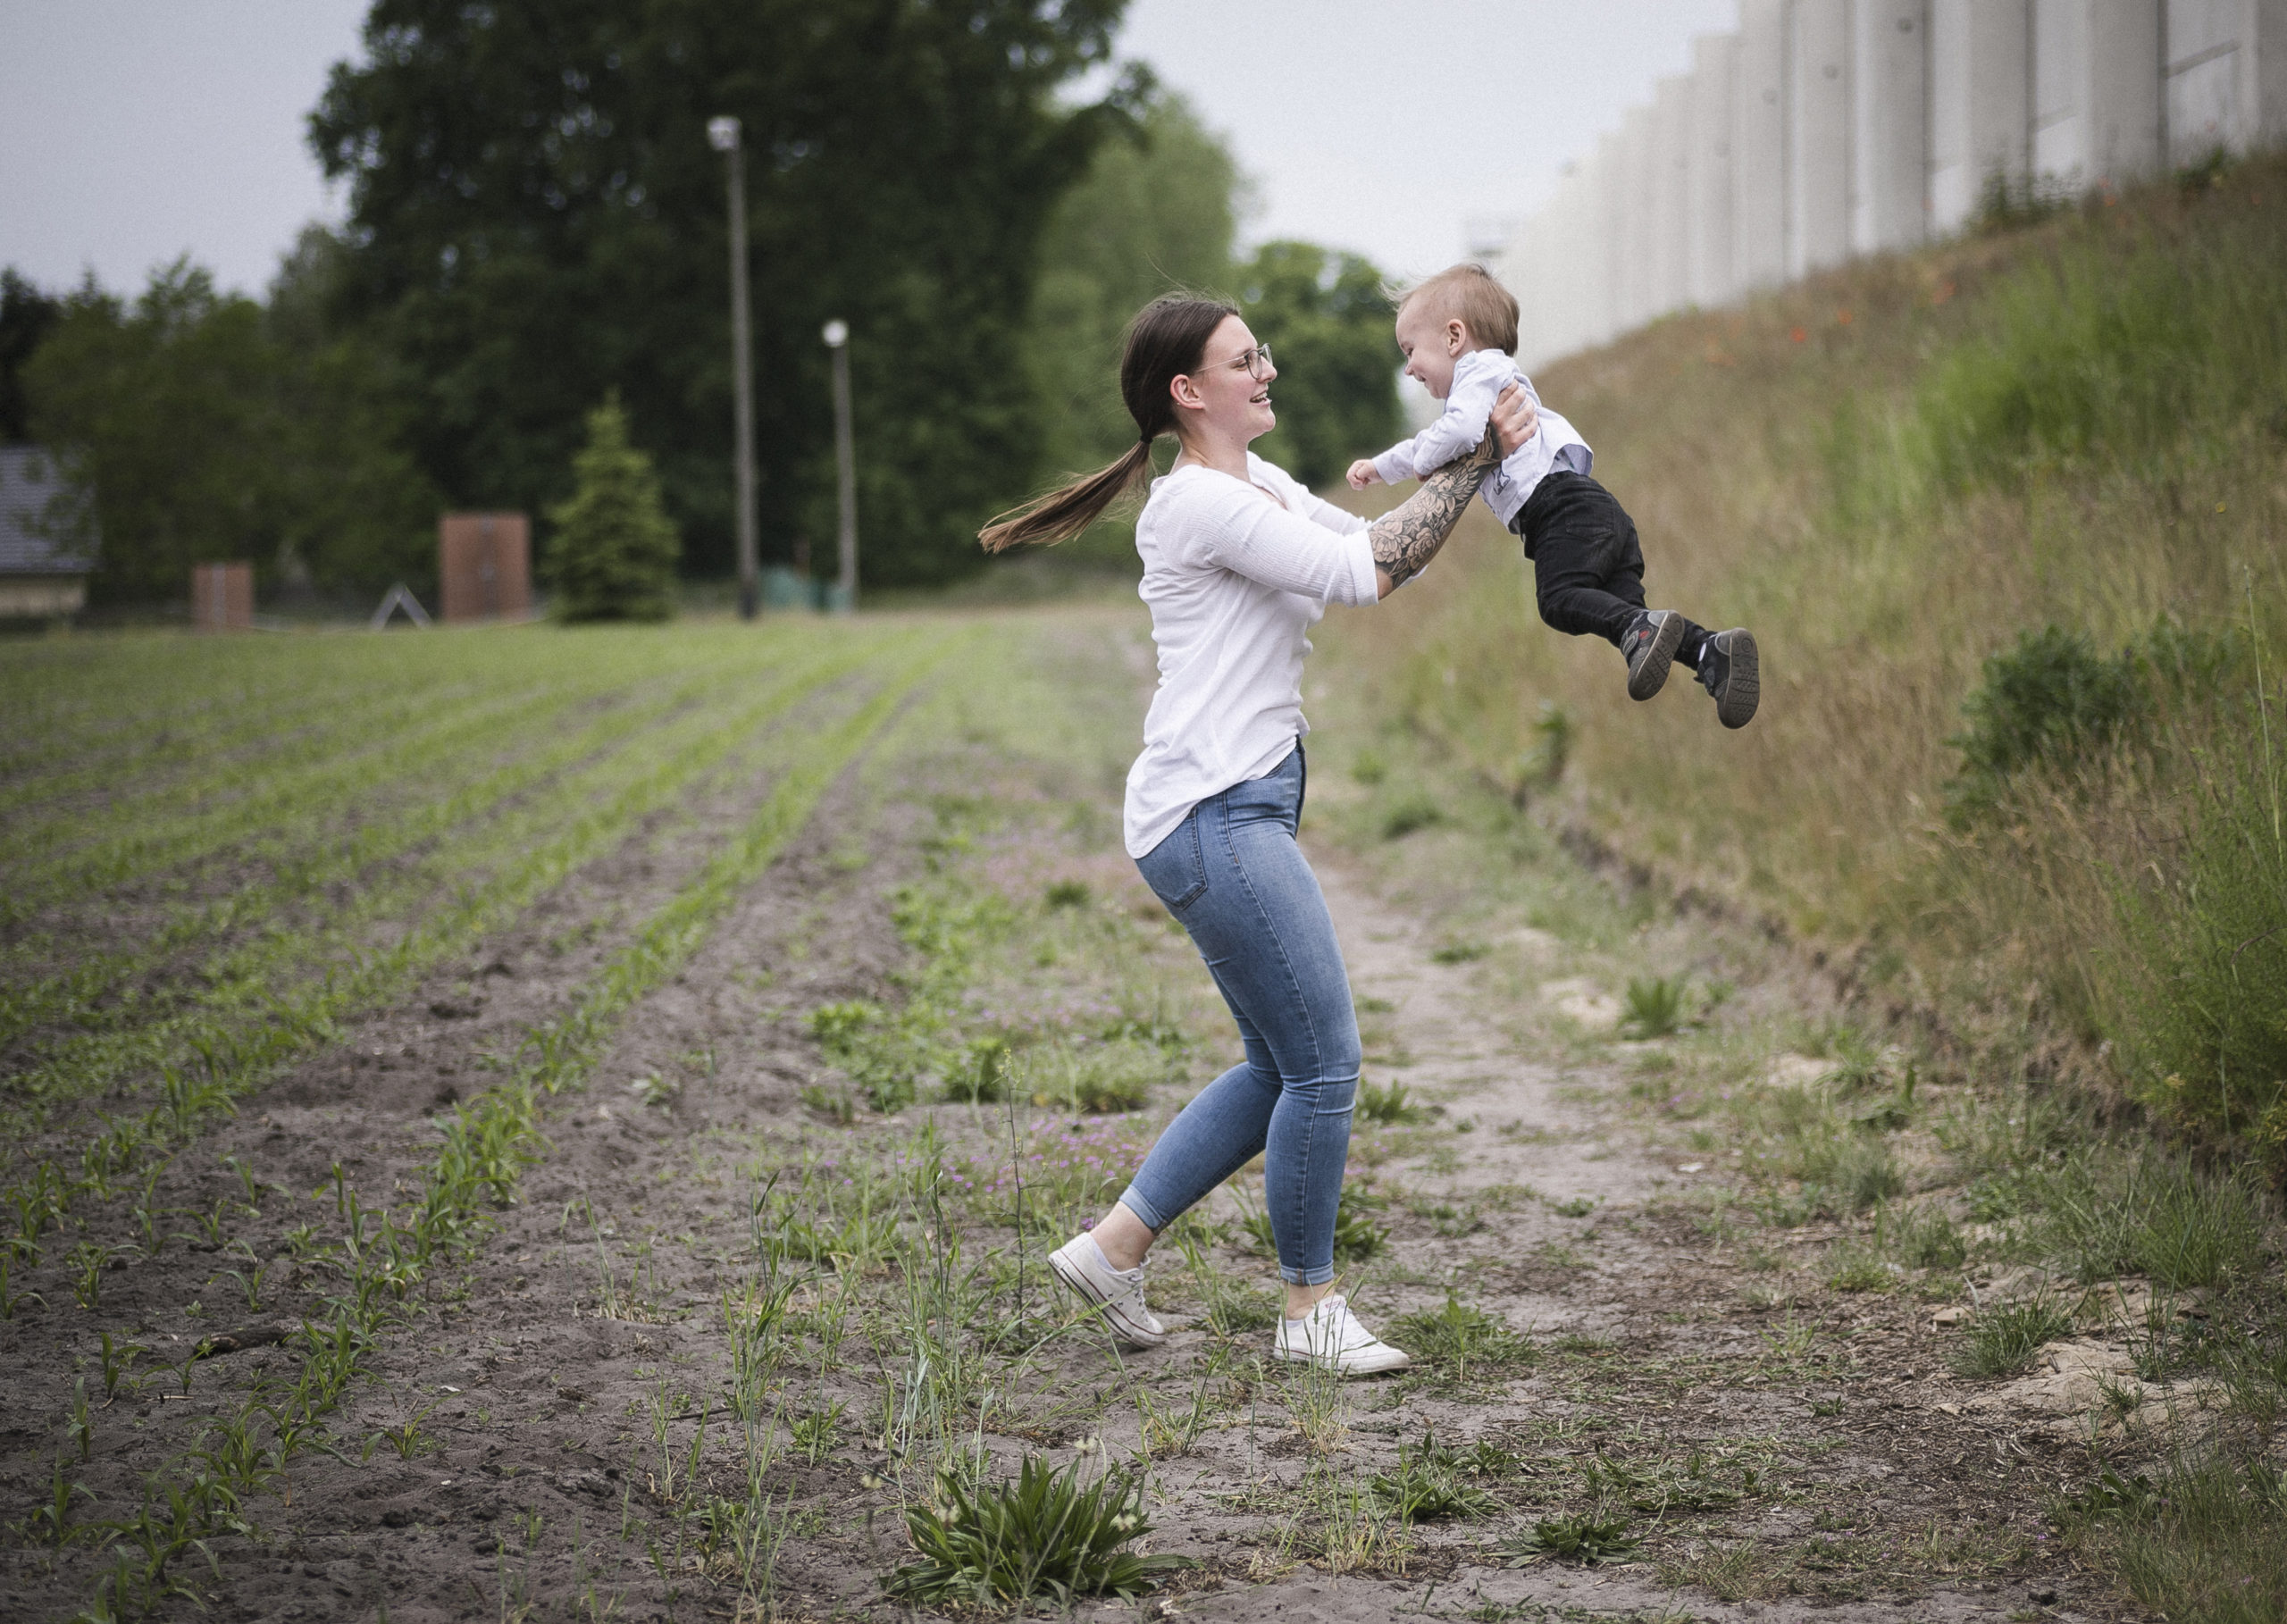 Fotografie einer jungen Frau, die ein kleines Kind liebevoll in die Luft hebt